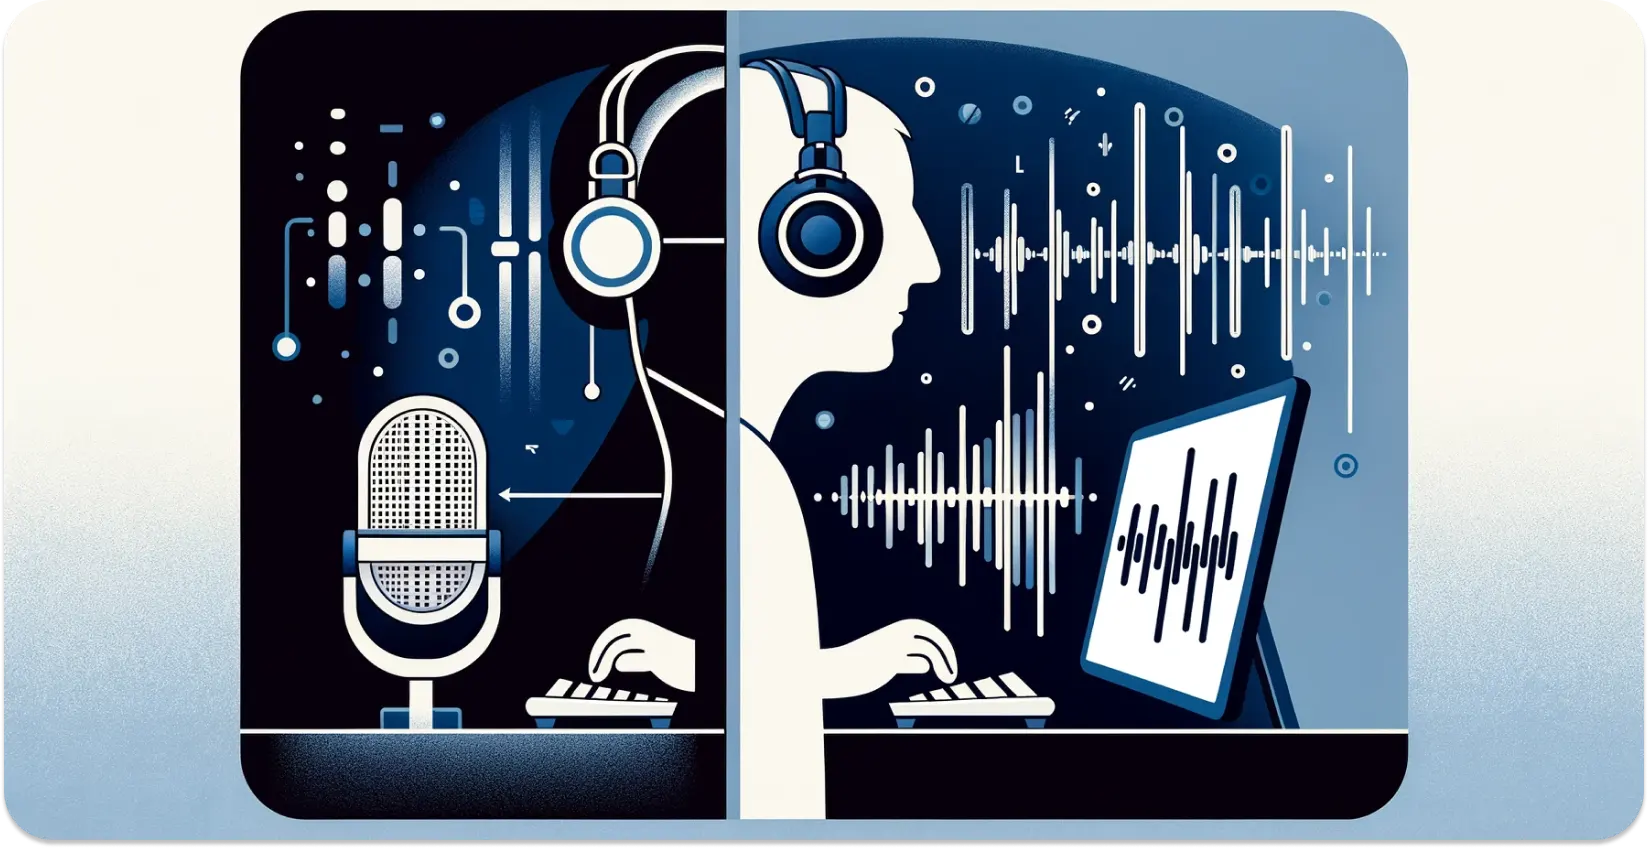 Représentation stylisée d’une personne avec des écouteurs transcrivant l’audio d’une tablette, avec des ondes sonores visuelles.